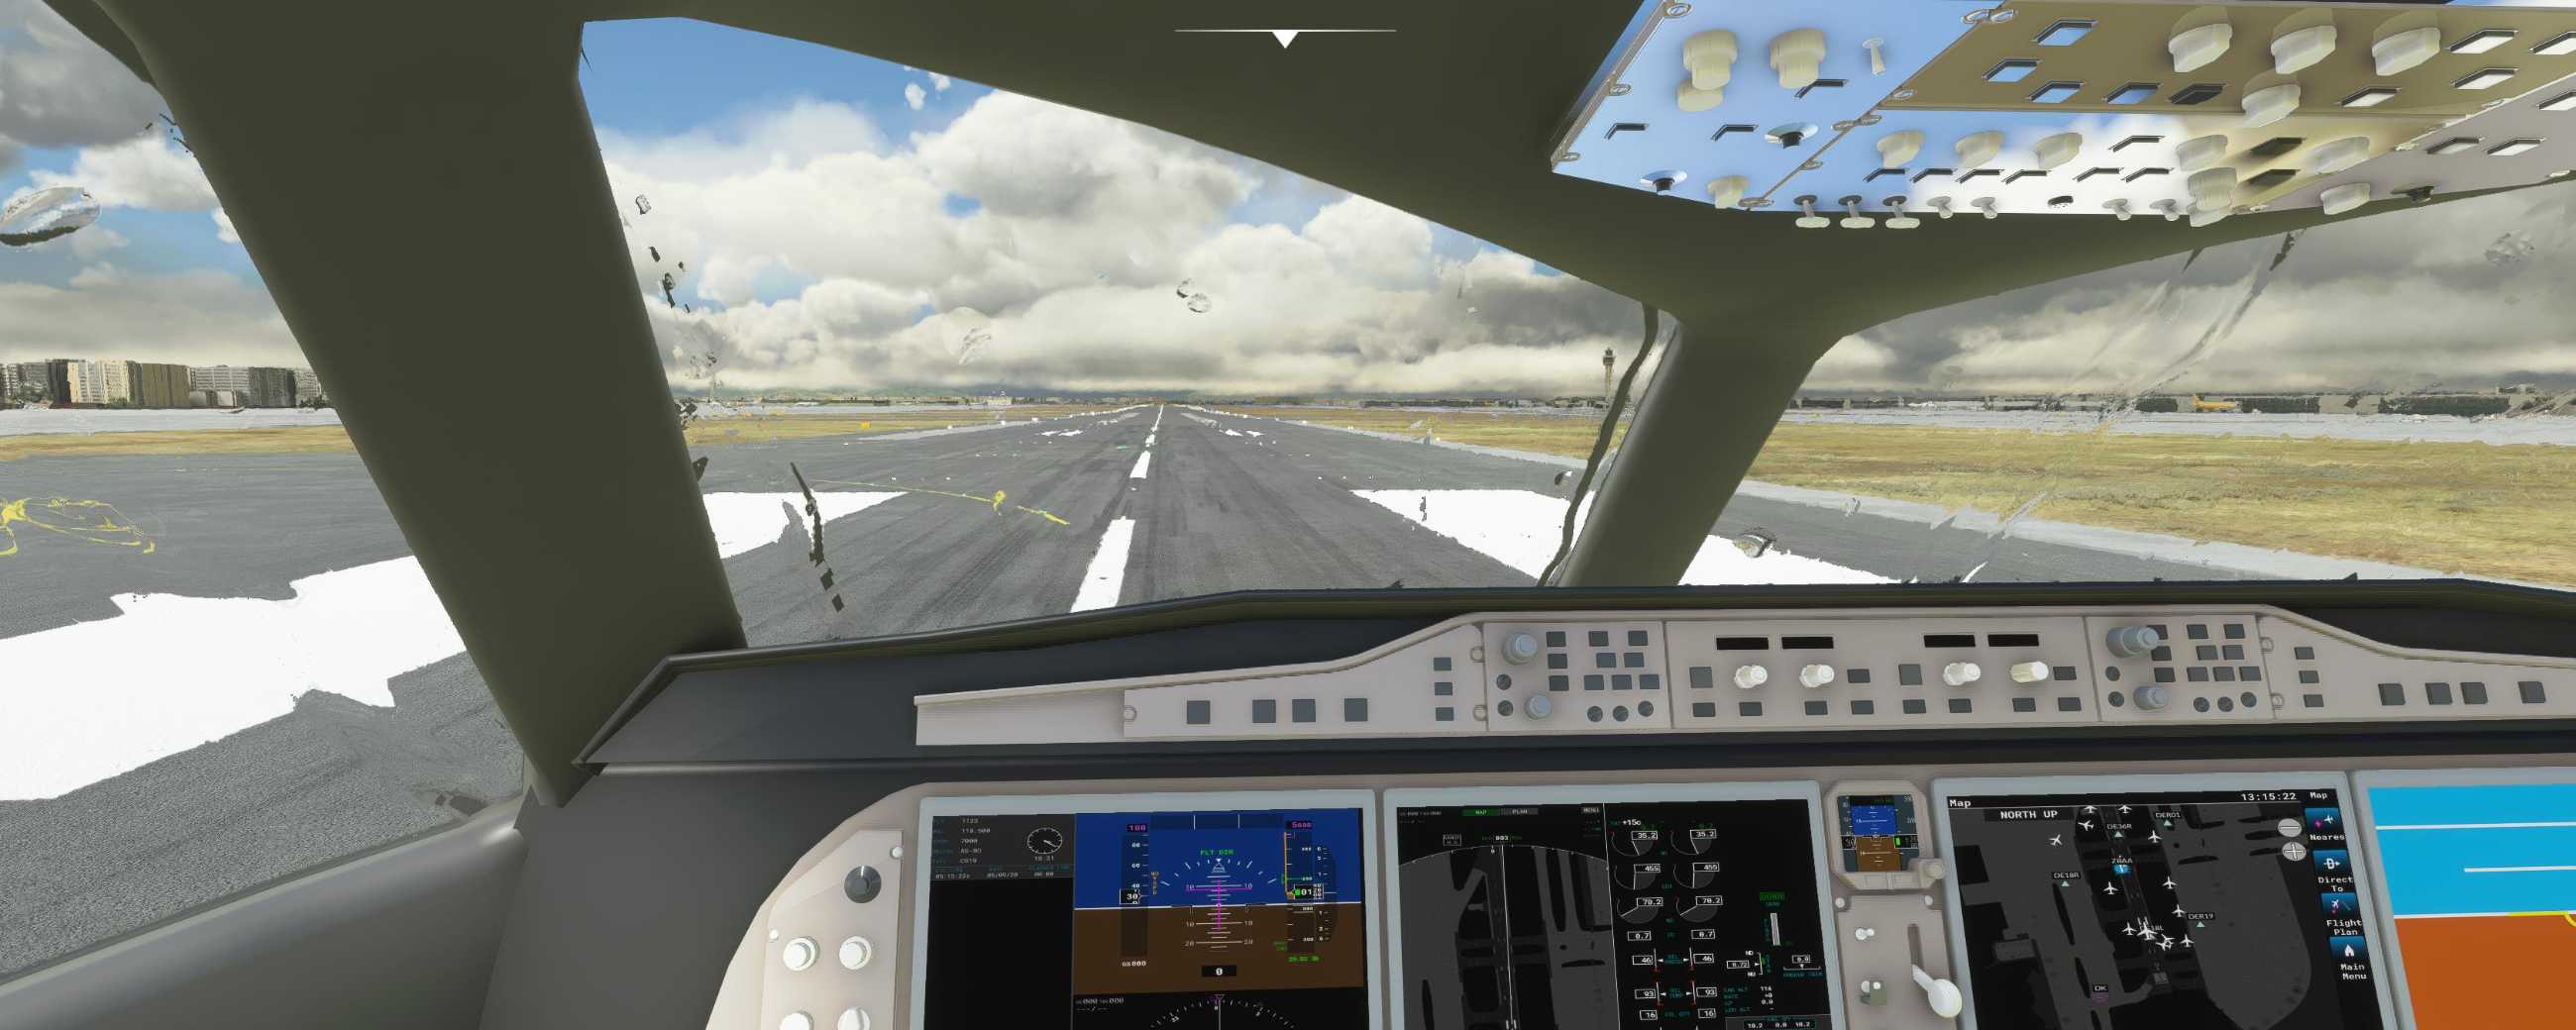 FYCYC-C919 国产大飞机机模 微软模拟飞行演示-5346 